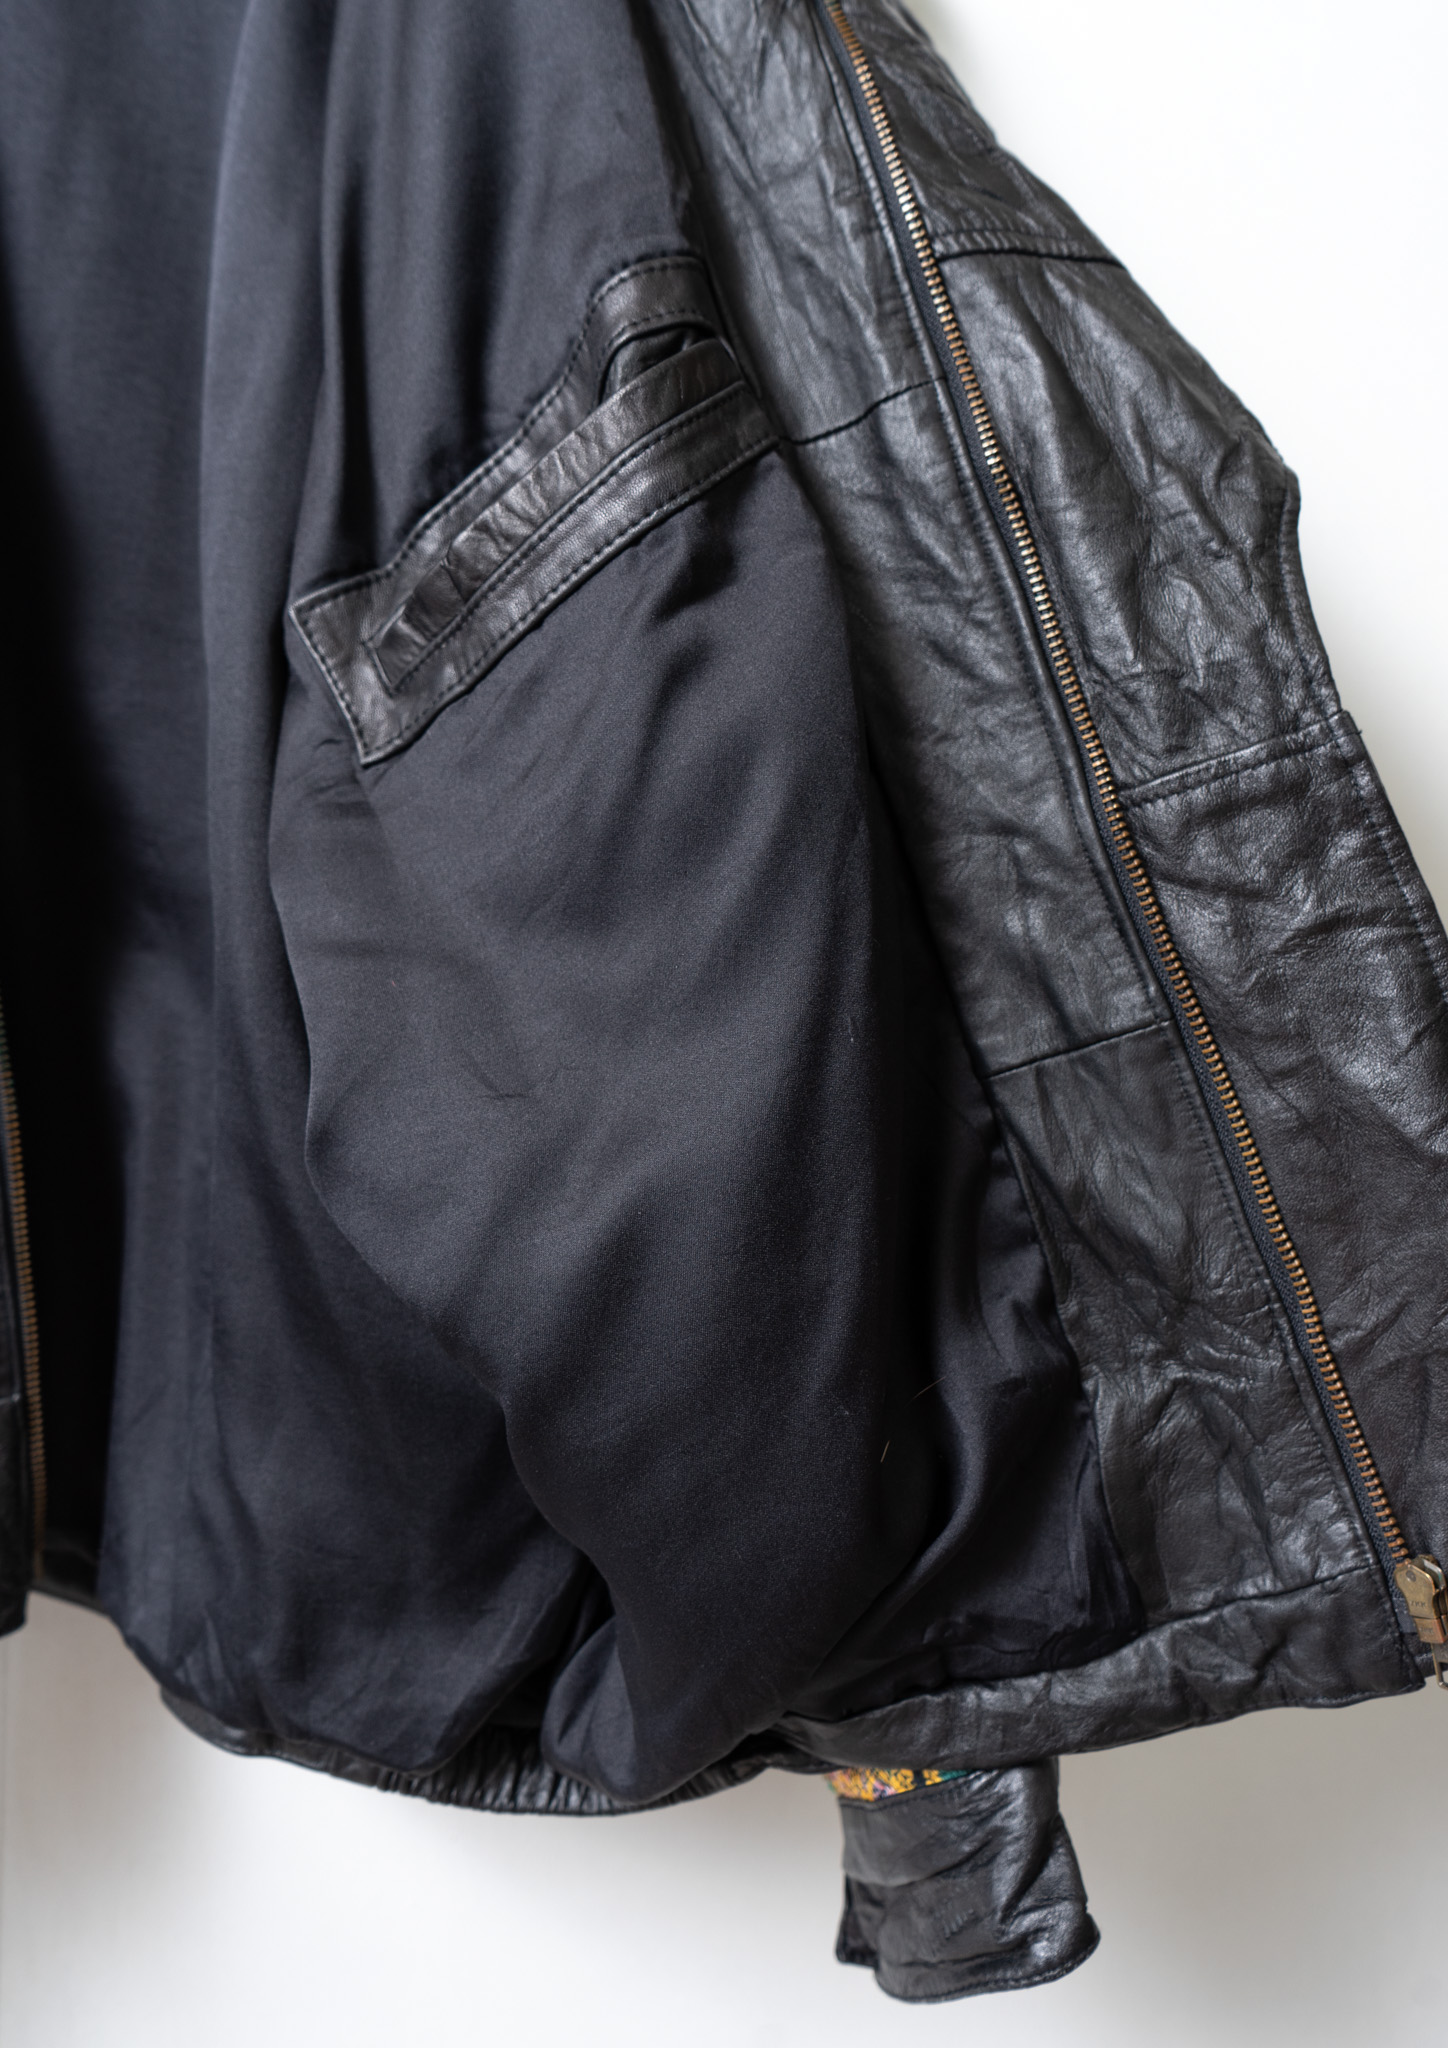 80's Multi Pattern Design Black Over Leather Jacket - Bernet ...